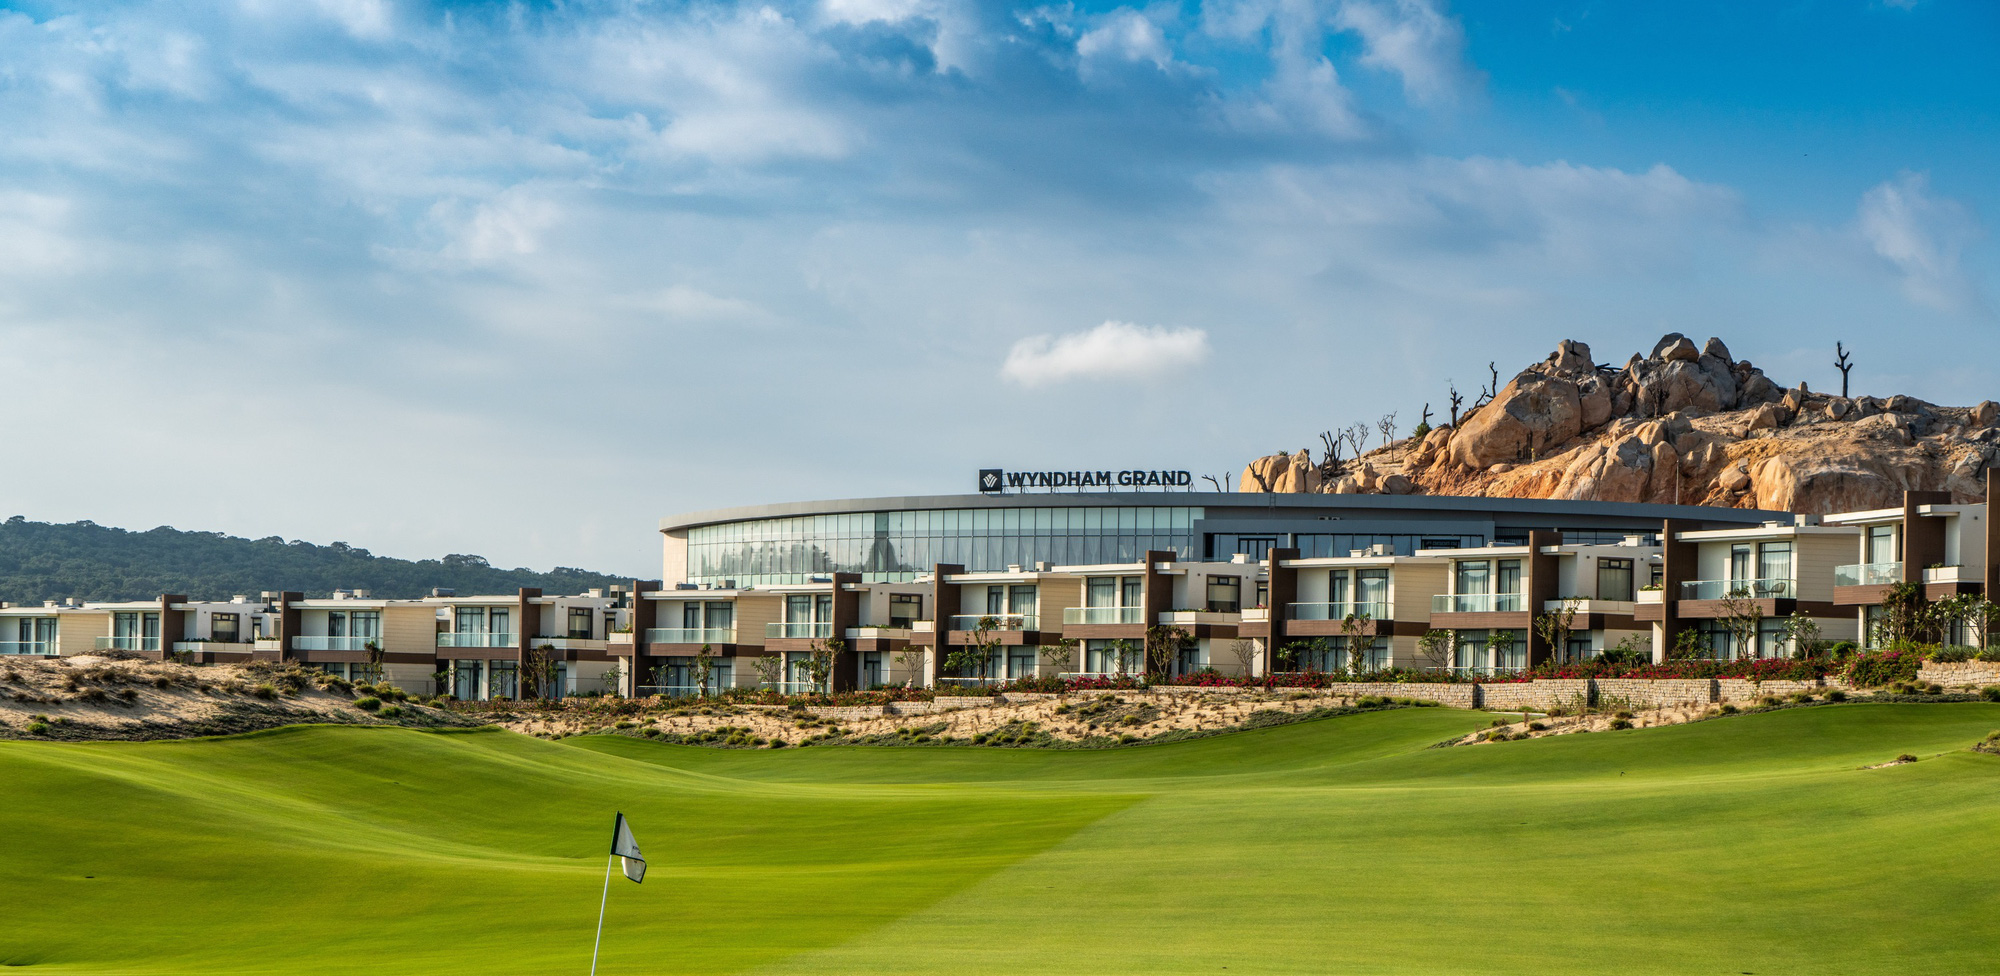 Toàn cảnh sân golf 27 lỗ tiêu chuẩn quốc tế, mang đến cho những người đam mê golf những trải nghiệm đẳng cấp - Ảnh: Đ.H